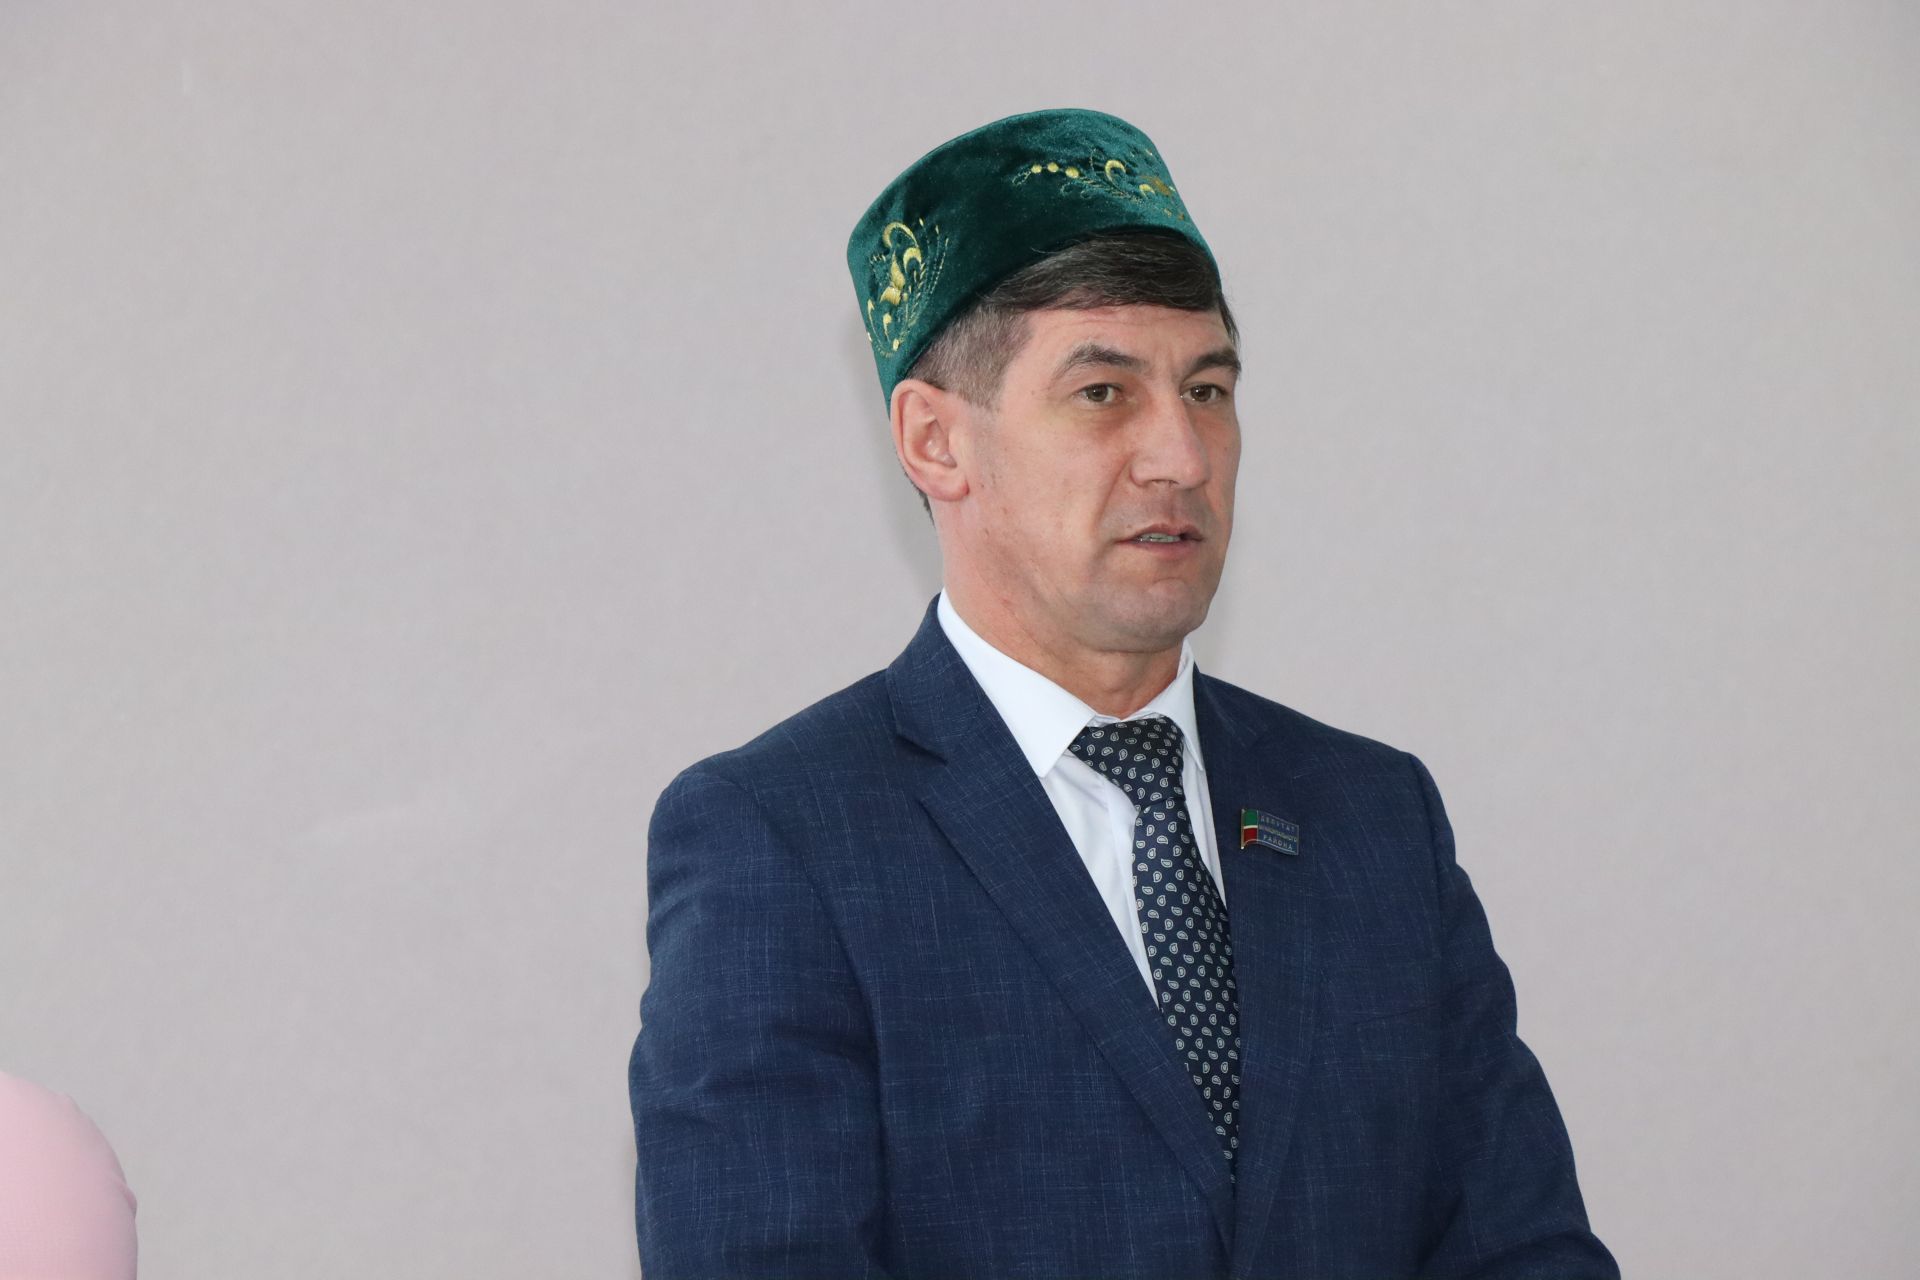 Временно исполняющим обязанности имам-мухтасиба Нурлатского района назначен Руслан хазрат Фархутдинов